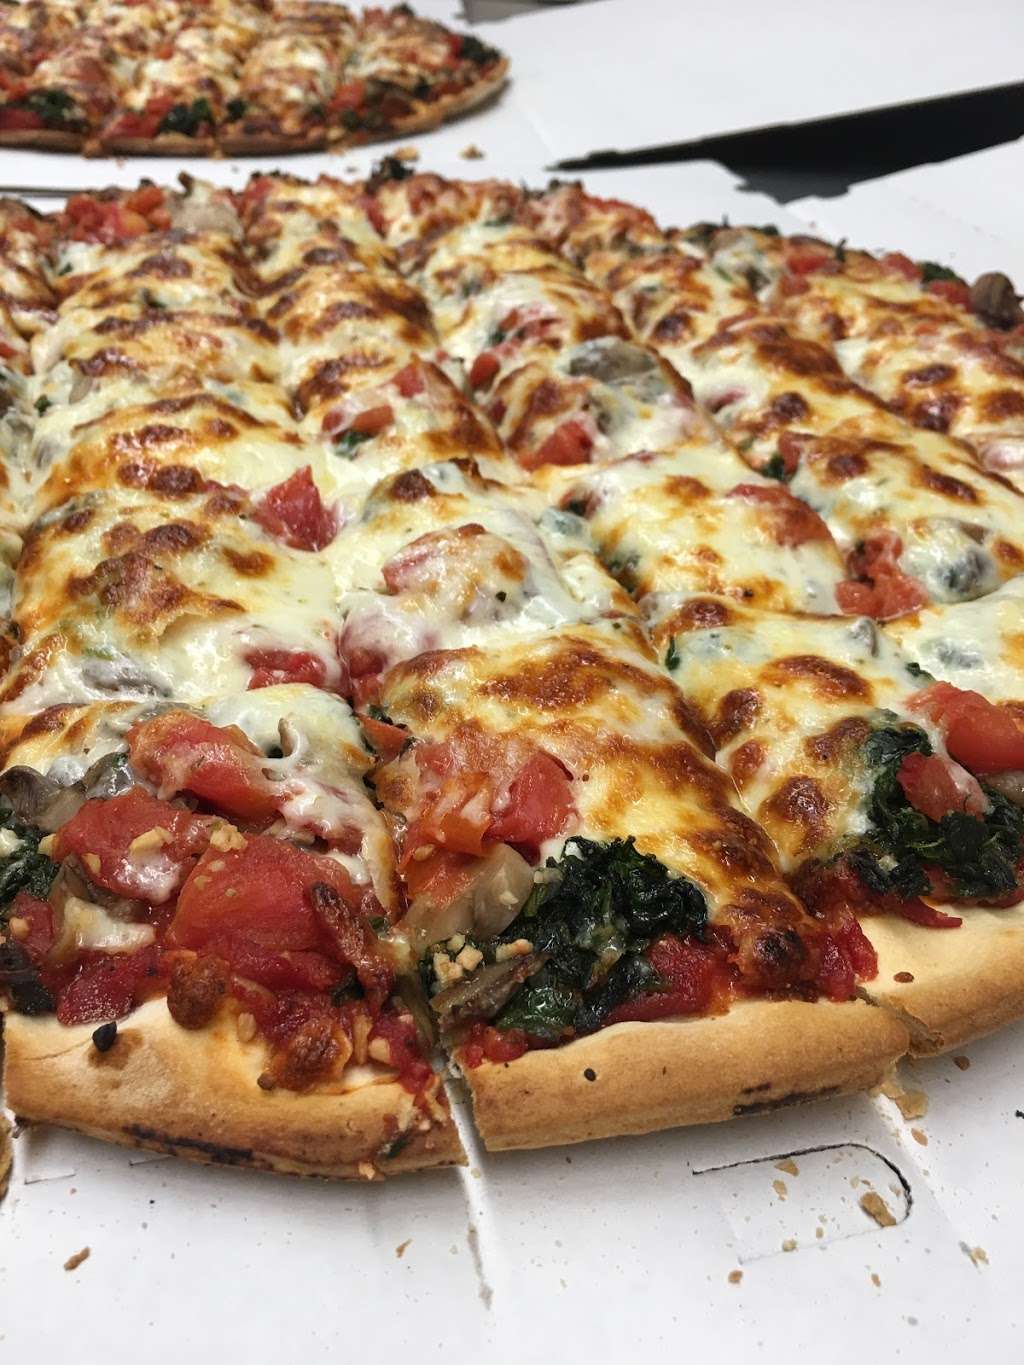 Sals Pizza Company | 5 Hanson Rd, Algonquin, IL 60102, USA | Phone: (847) 658-7272